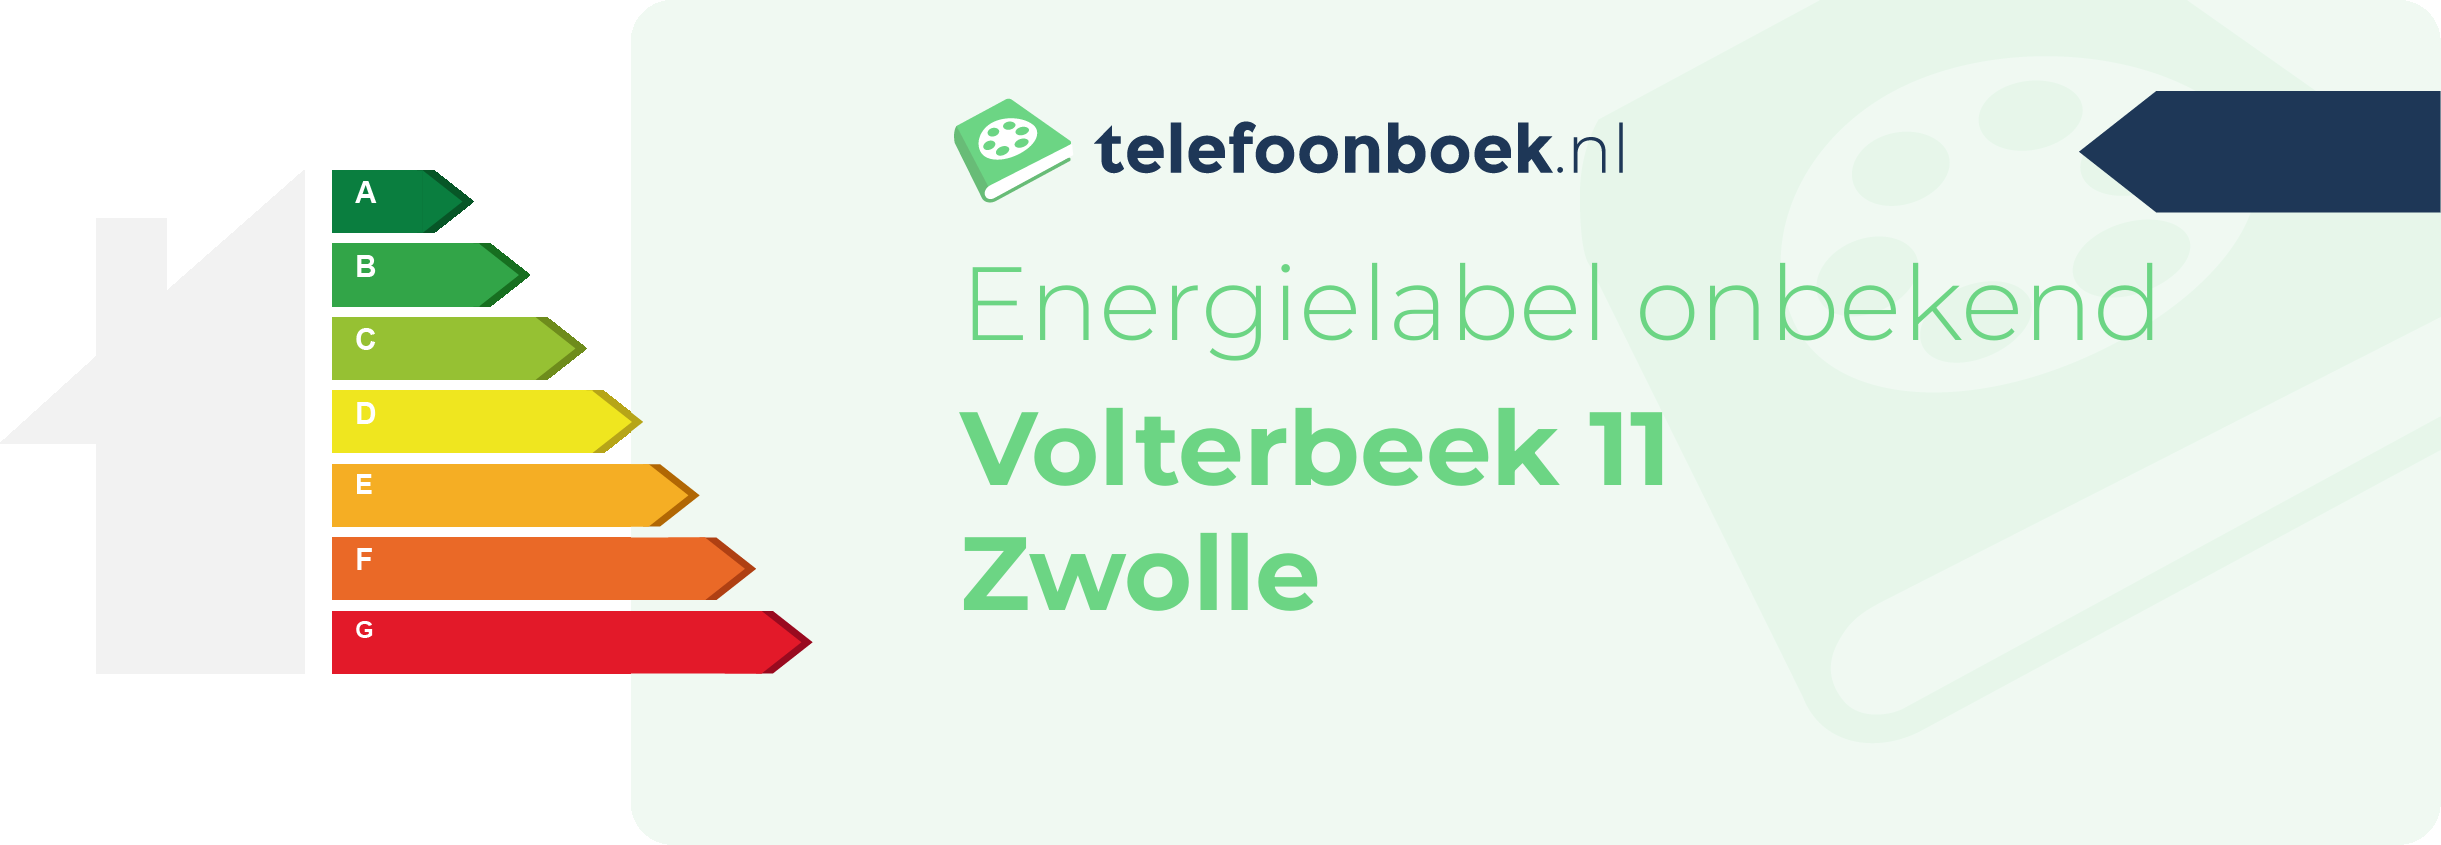 Energielabel Volterbeek 11 Zwolle